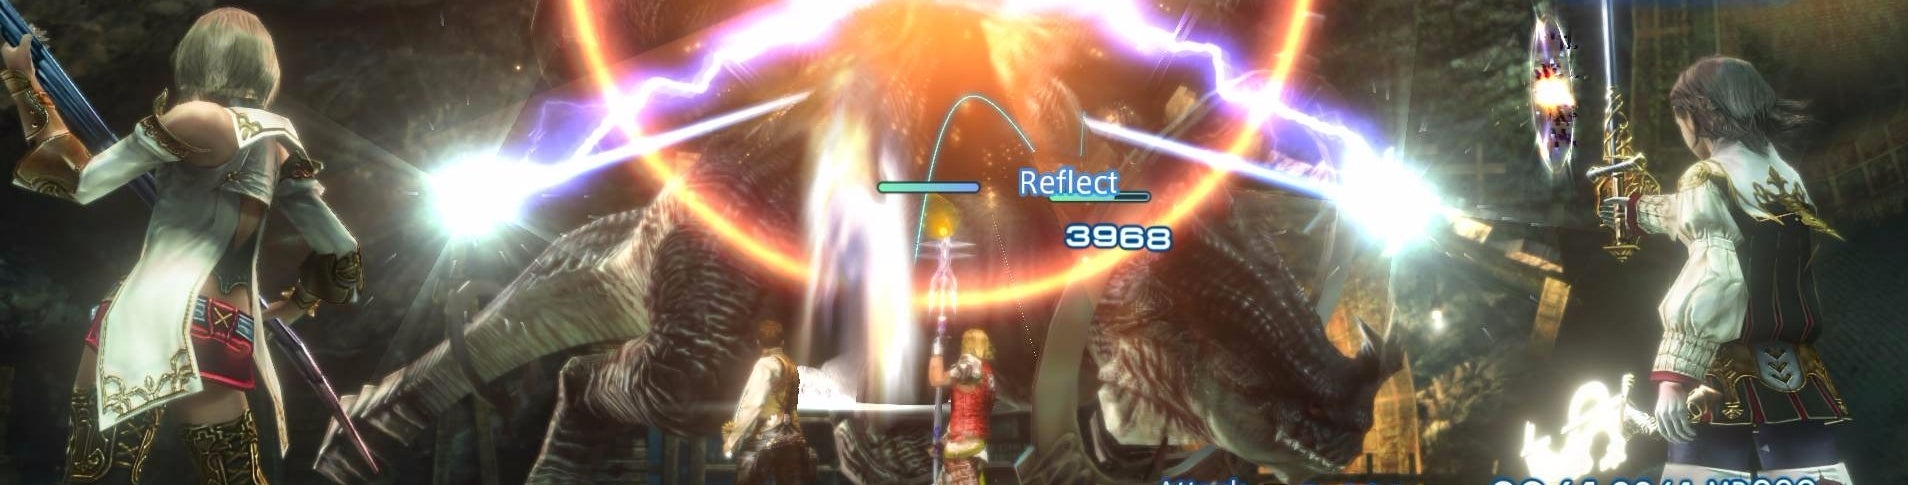 Imagem para O Remaster do Final Fantasy 12 na PS4 é um excelente upgrade